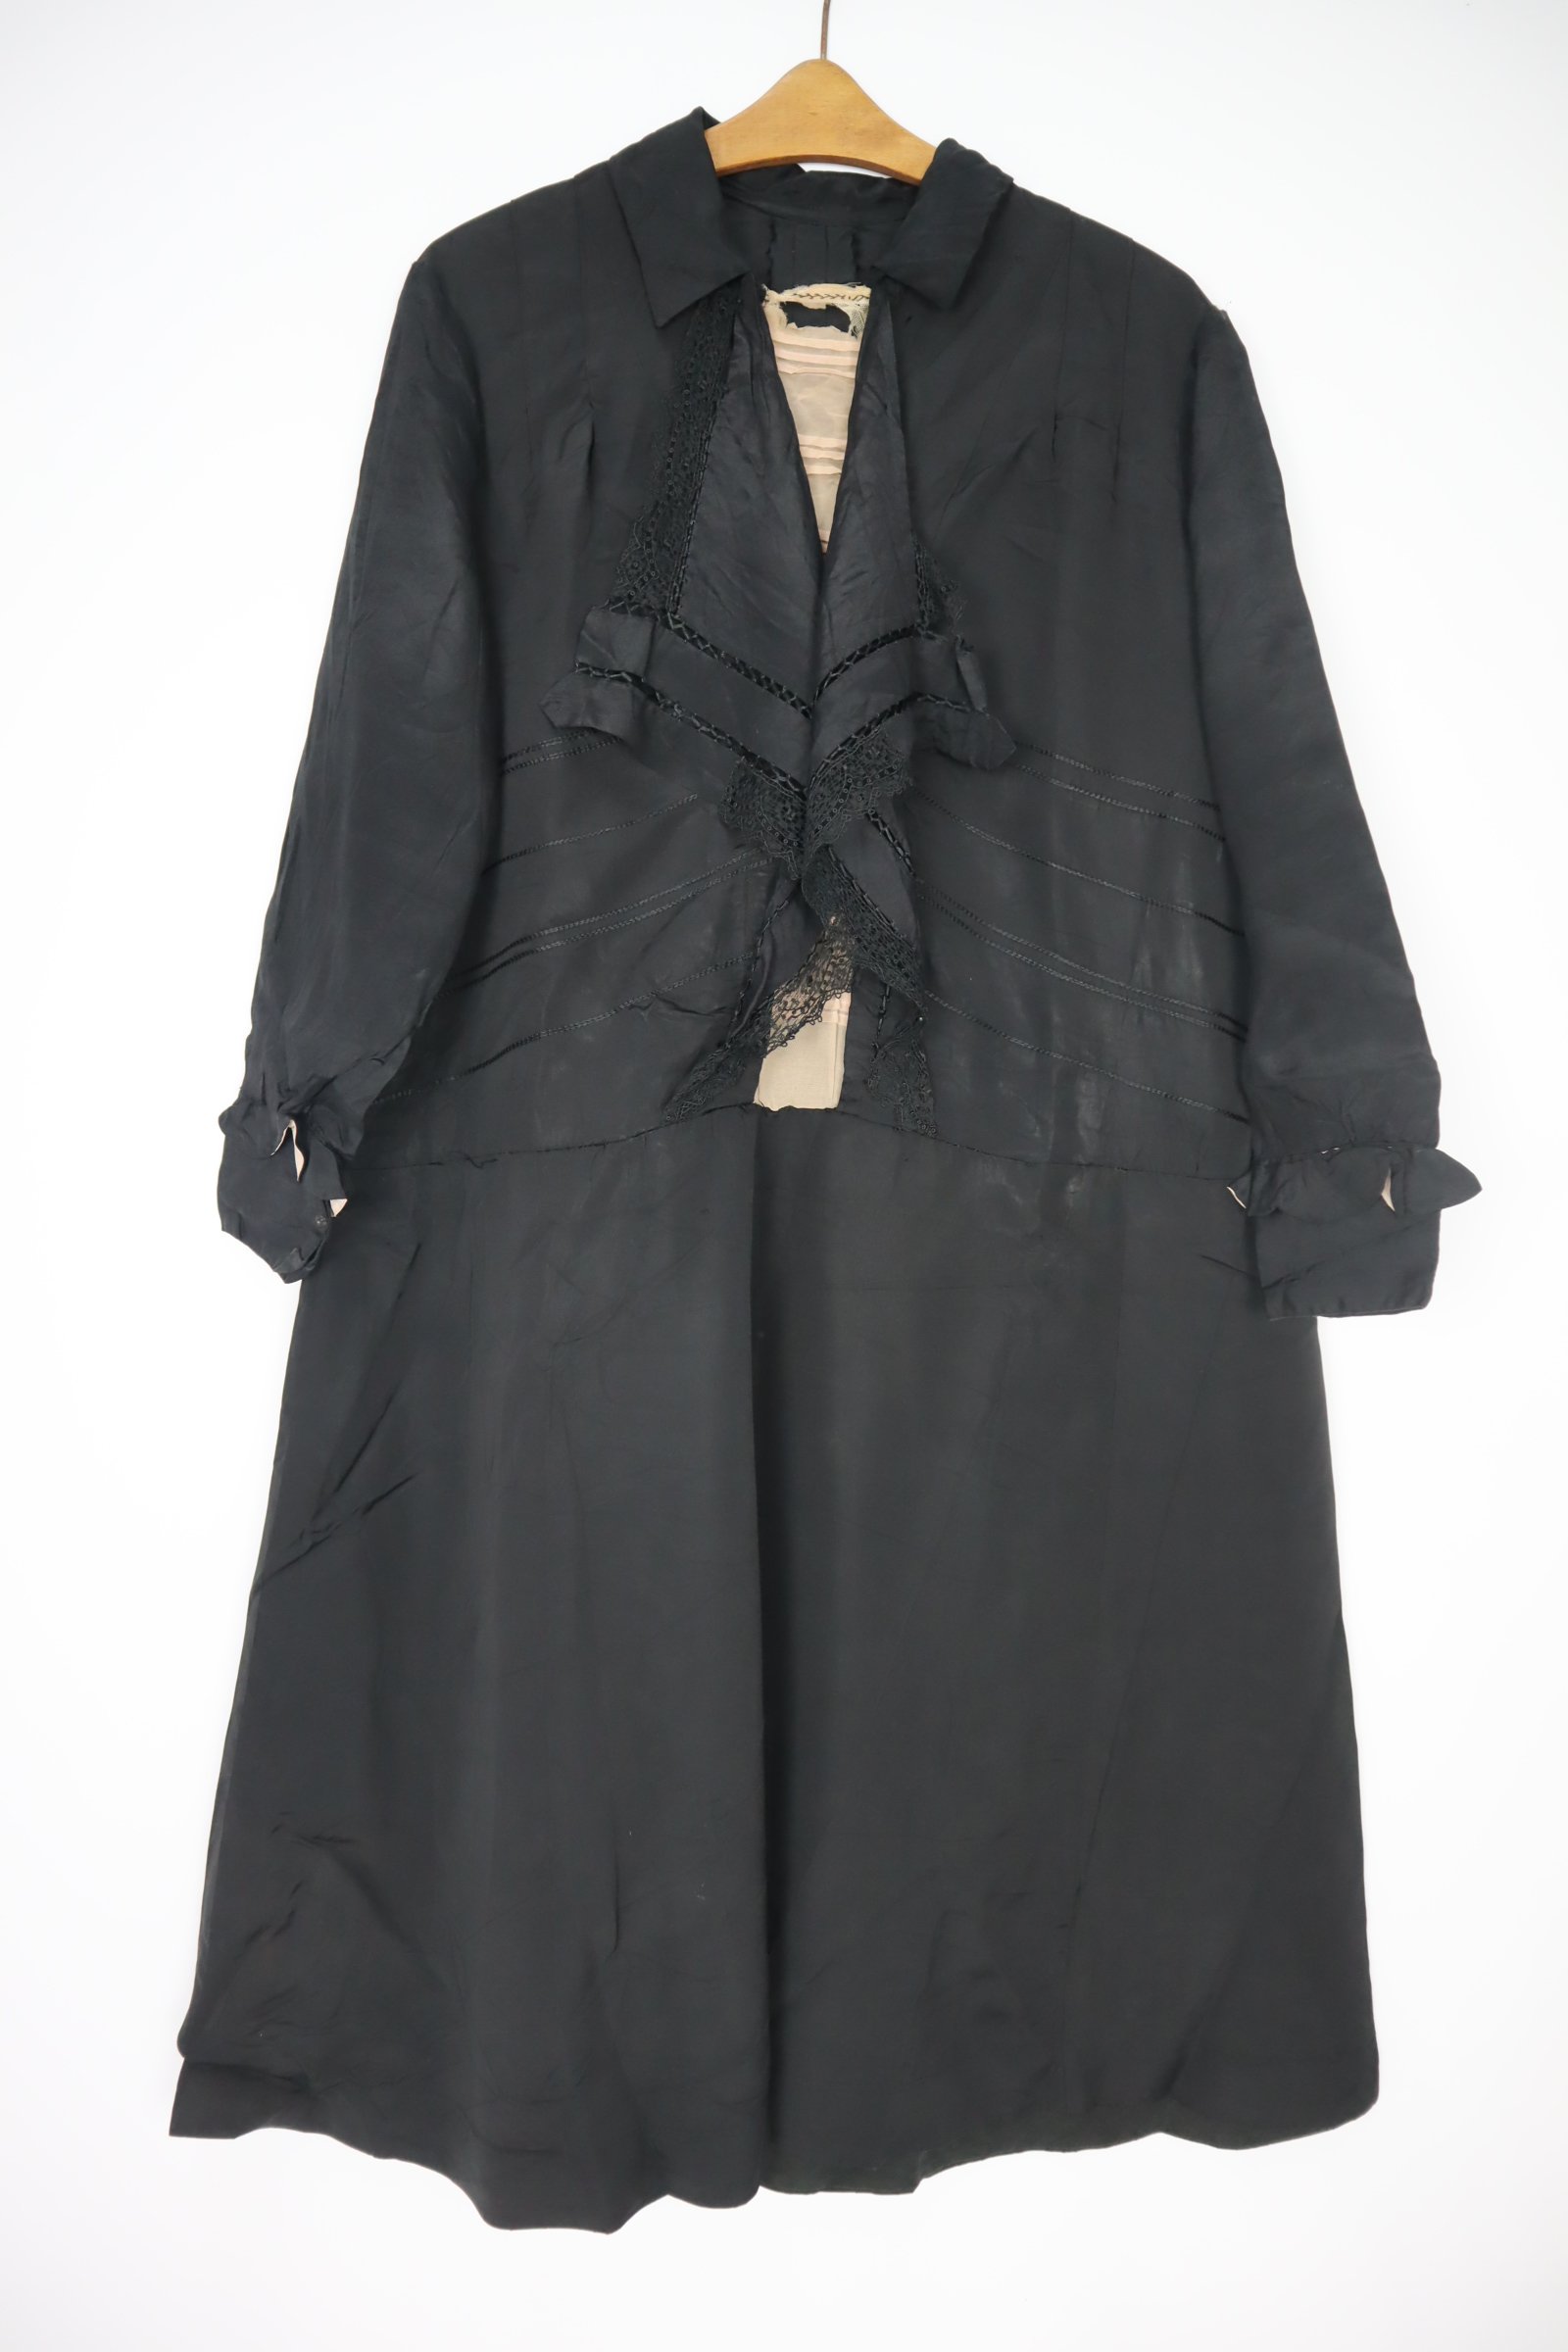 Schwarzes Kleid mit Volant am Oberteil (Freilichtmuseum Roscheider Hof CC0)